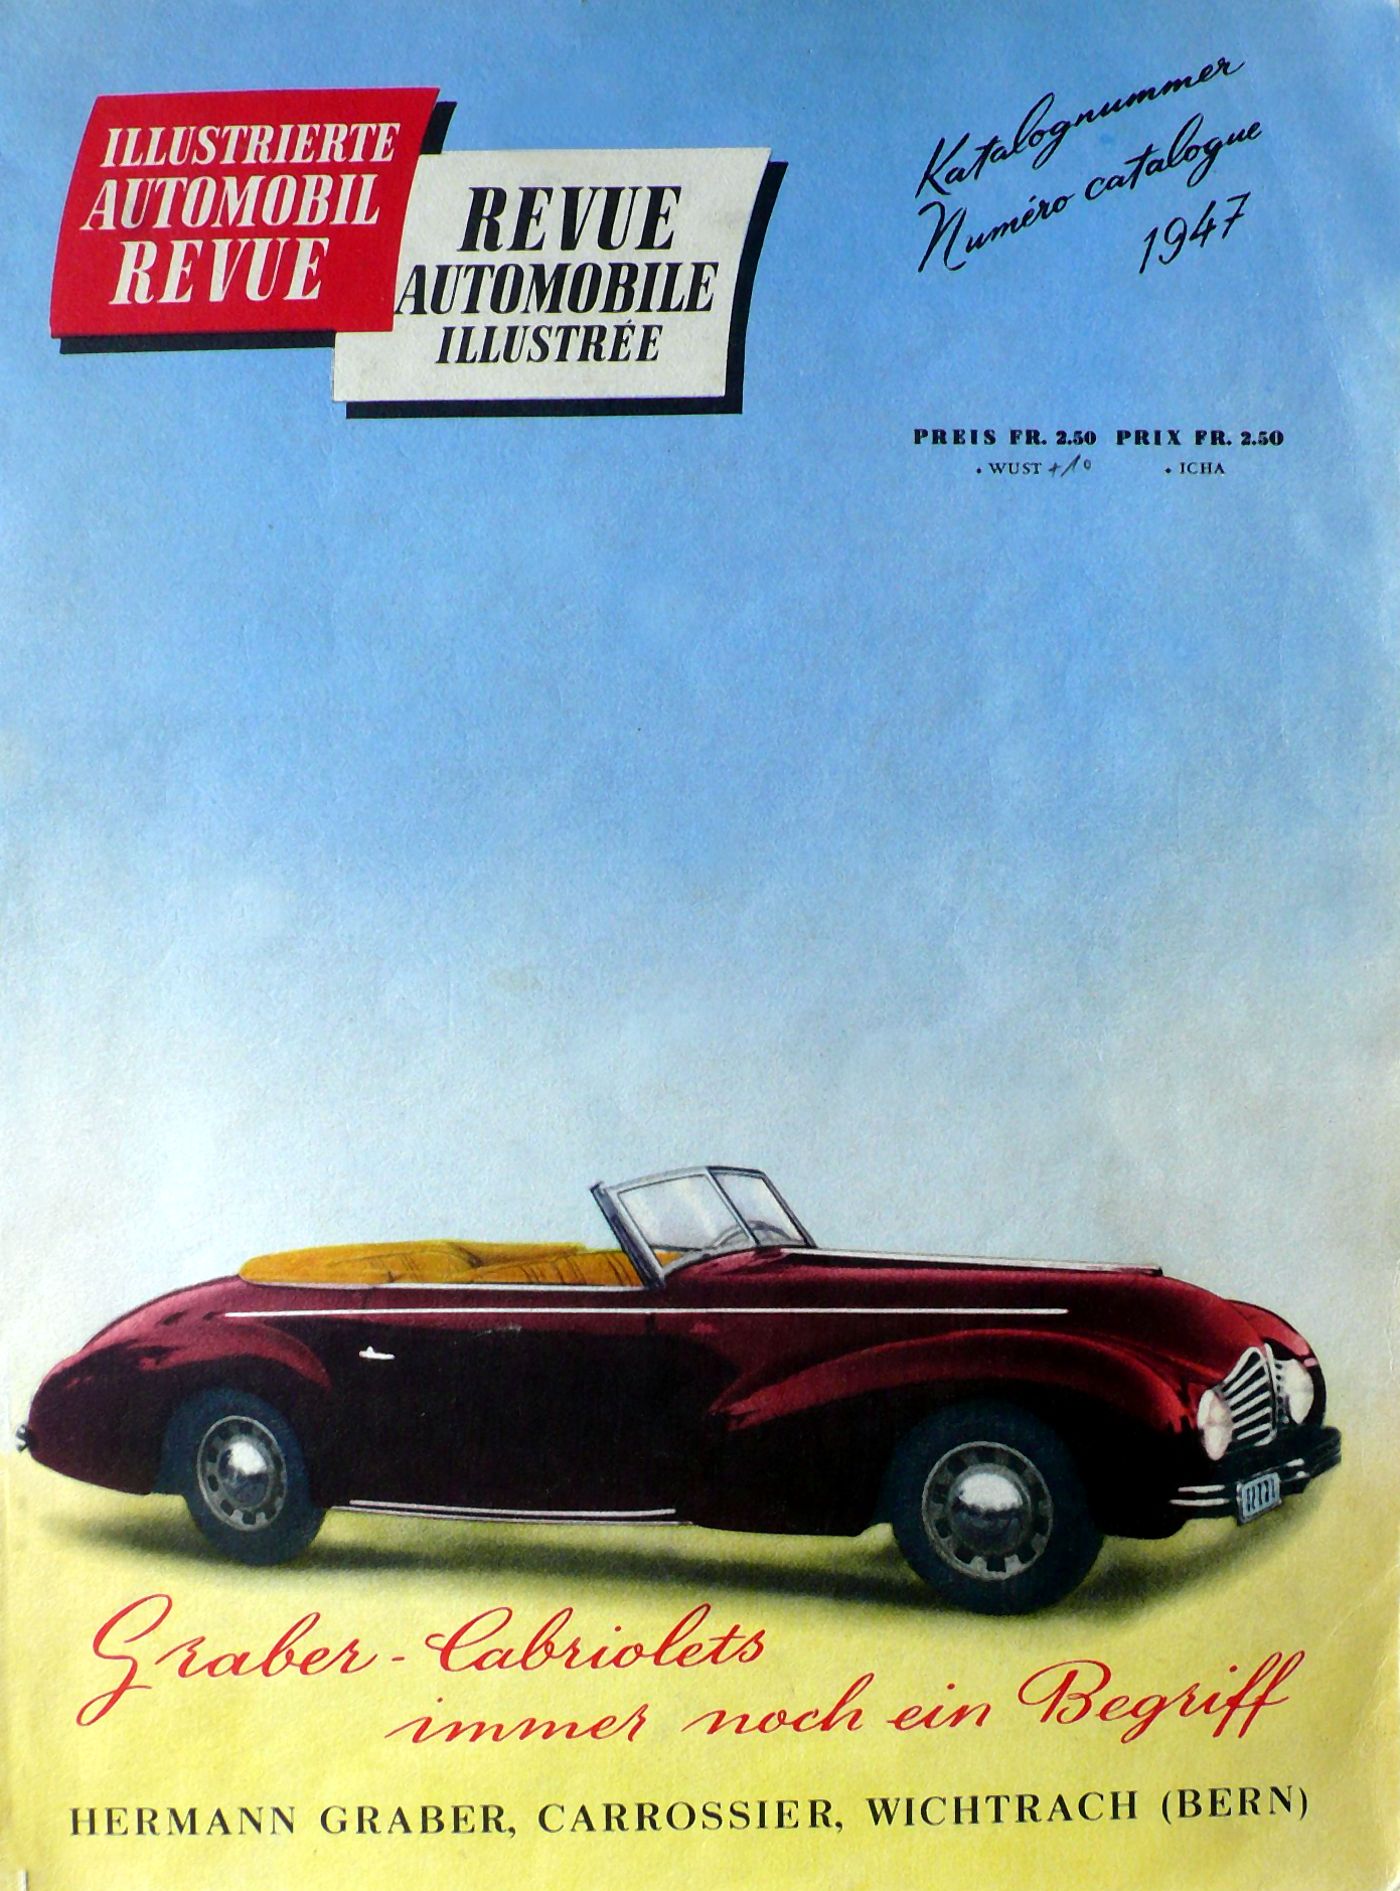 Der Peugeot 402 Graber auf dem Titelbild des Automobil Revue Katalogs 1947